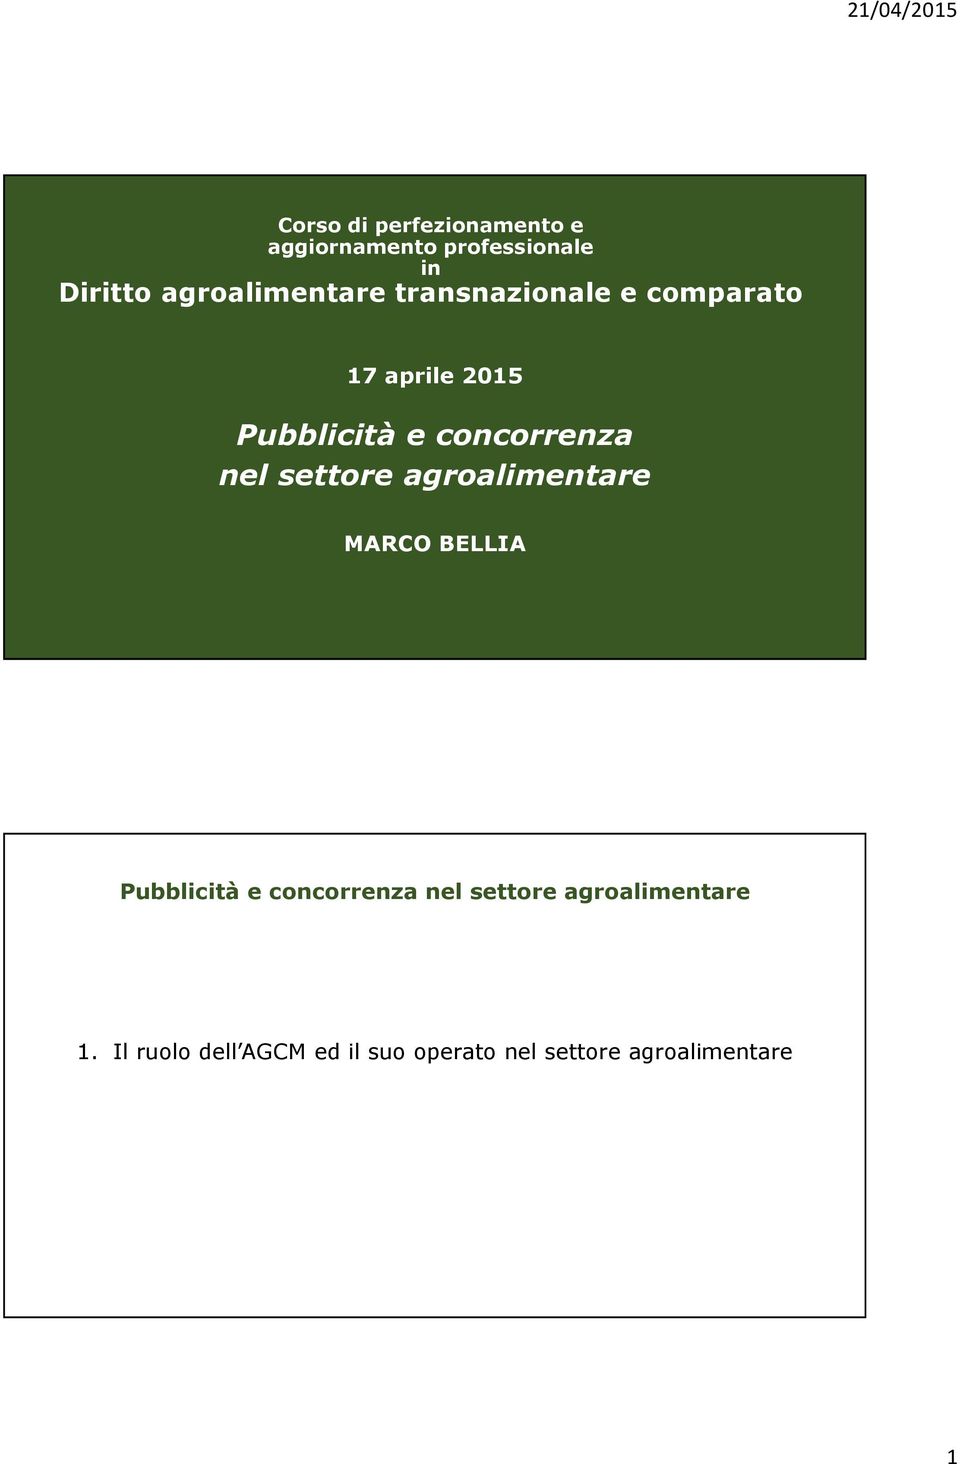 2015 Pubblicità e concorrenza nel settore agroalimentare MARCO